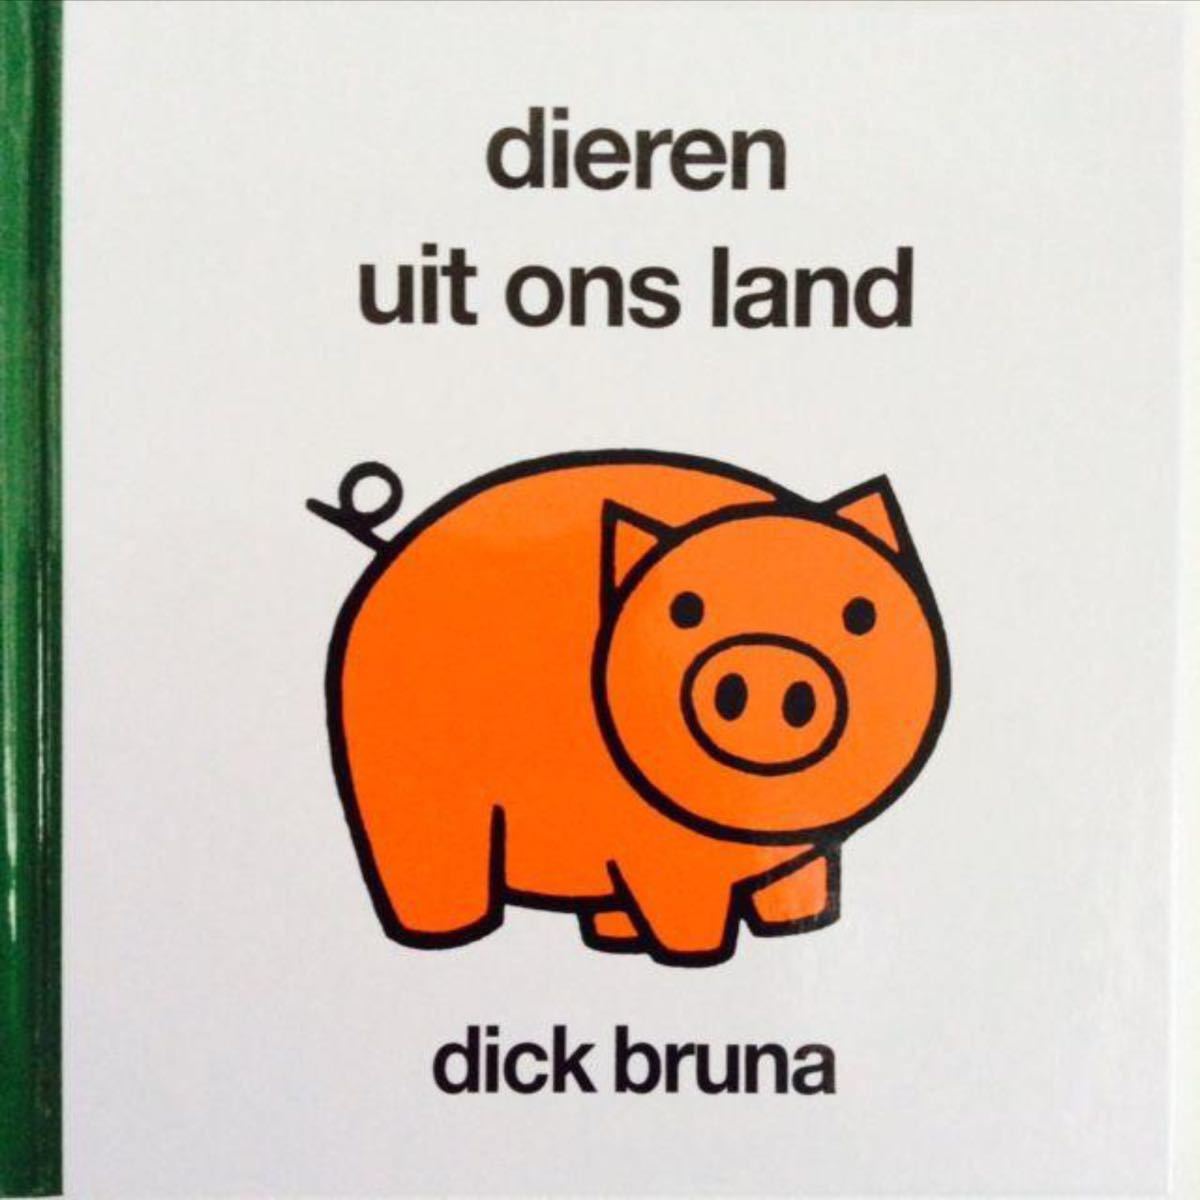 【絵本】ディック・ブルーナ37aオランダのどうぶつ/dieren uit ons land/グレーうさぎ